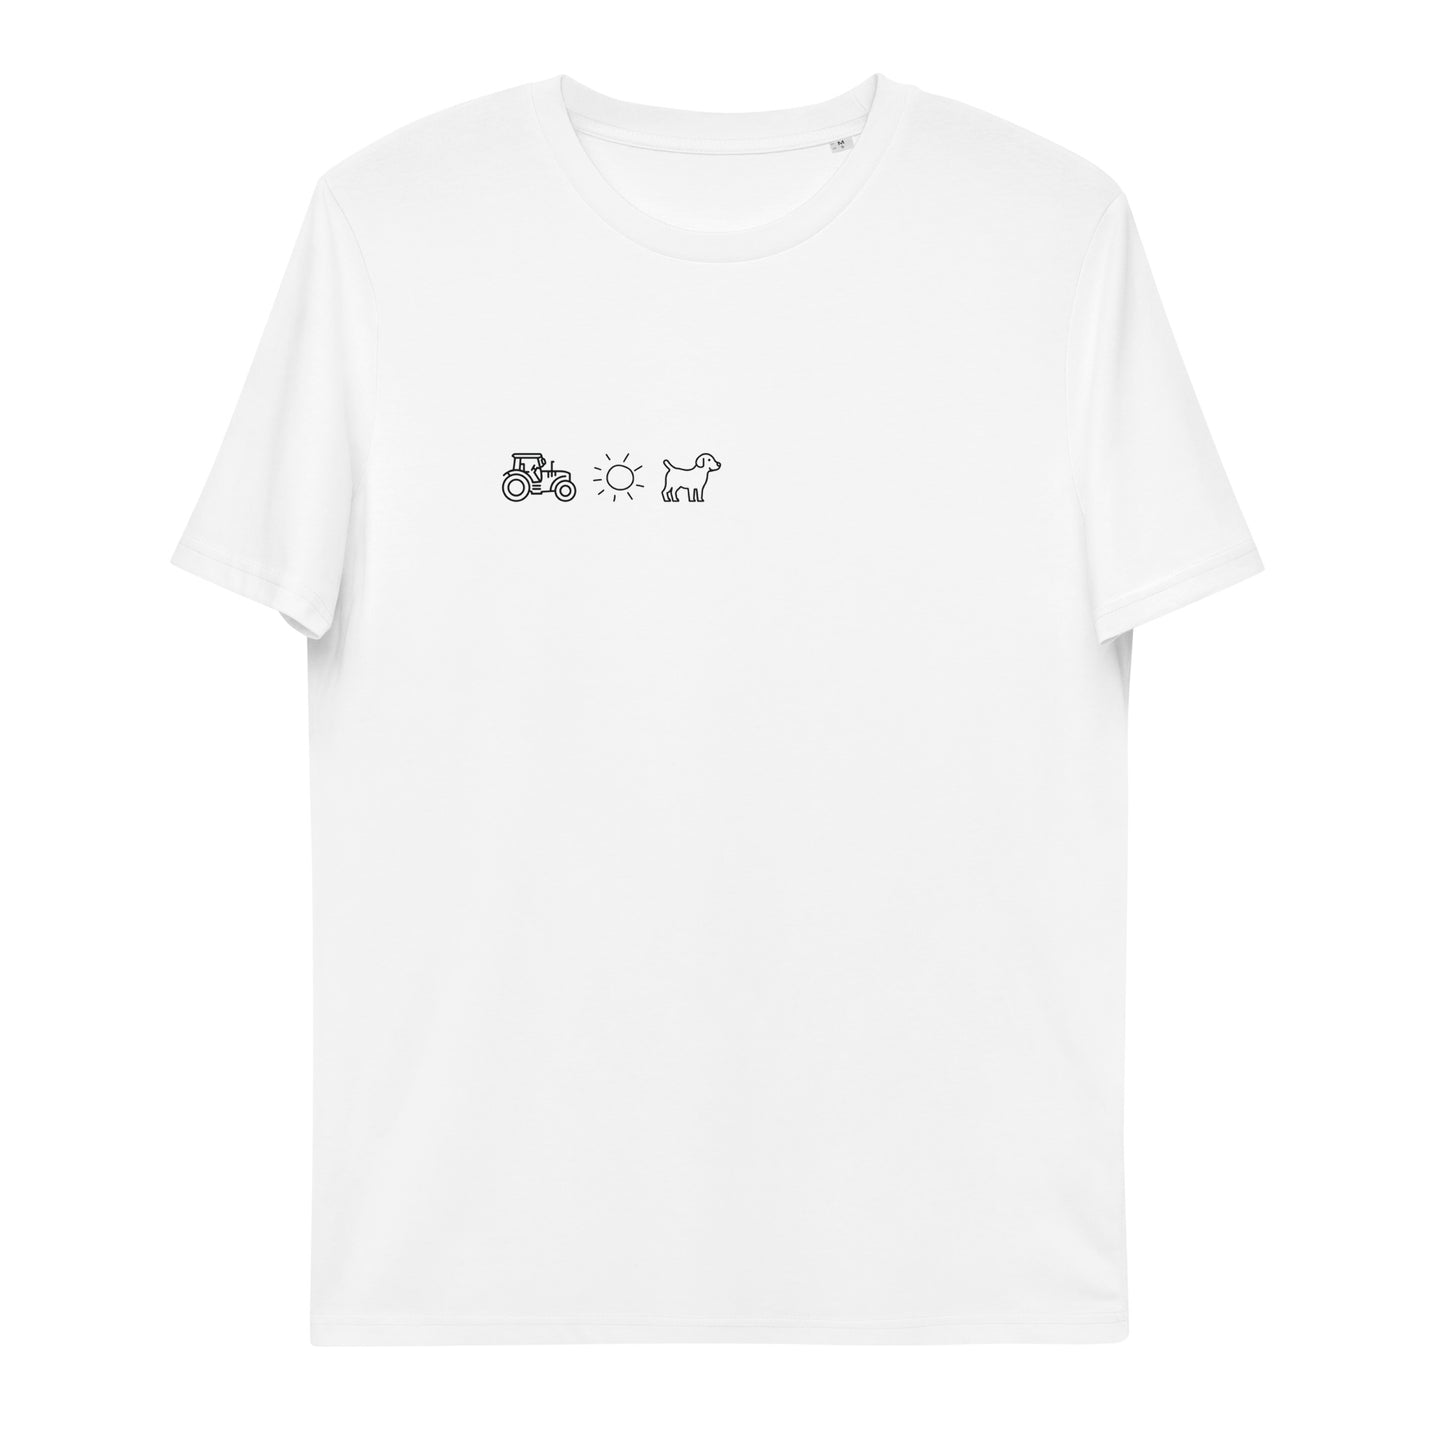 Elemente Hund - Unisex T-Shirt